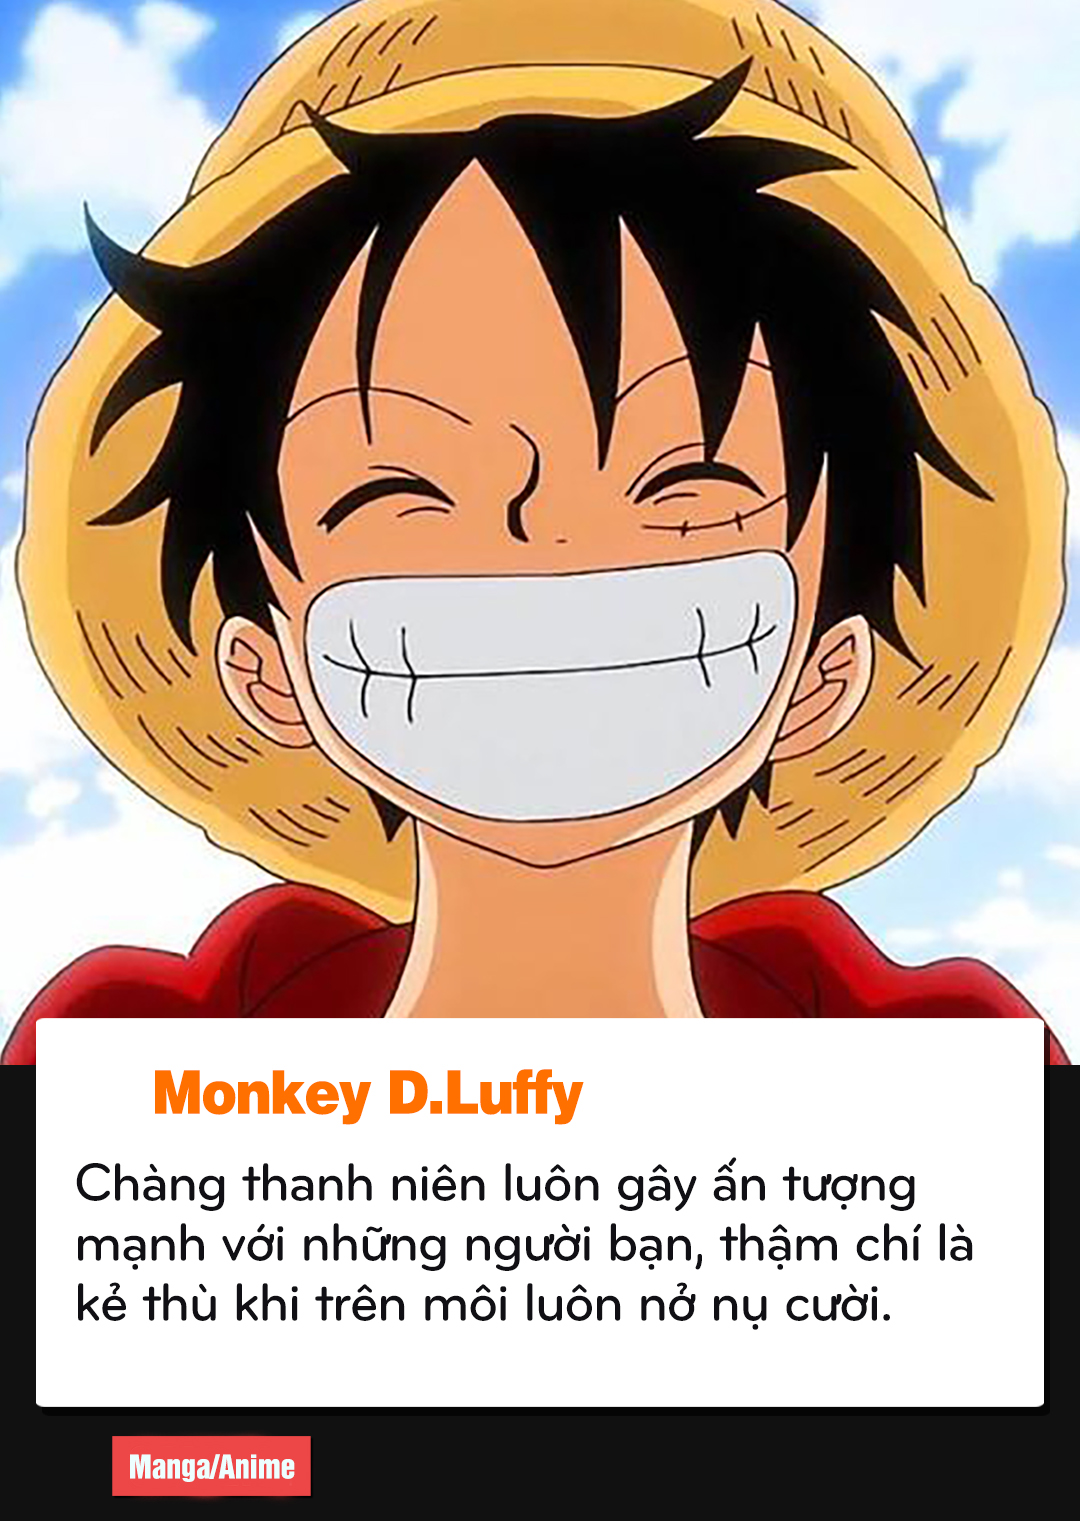 Cả Oden và Luffy đều là các nhân vật rất quan trọng trong One Piece. Oden là một nhân vật huyền thoại của vương quốc Wano và đã từng tham gia vào băng hải tặc Roger. Luffy là thuyền trưởng của băng hải tặc Mũ Rơm và có ước mơ tìm kiếm kho báu One Piece. Hãy xem những hình ảnh liên quan để khám phá sự kết nối giữa hai nhân vật này trong bộ manga/anime nổi tiếng này!